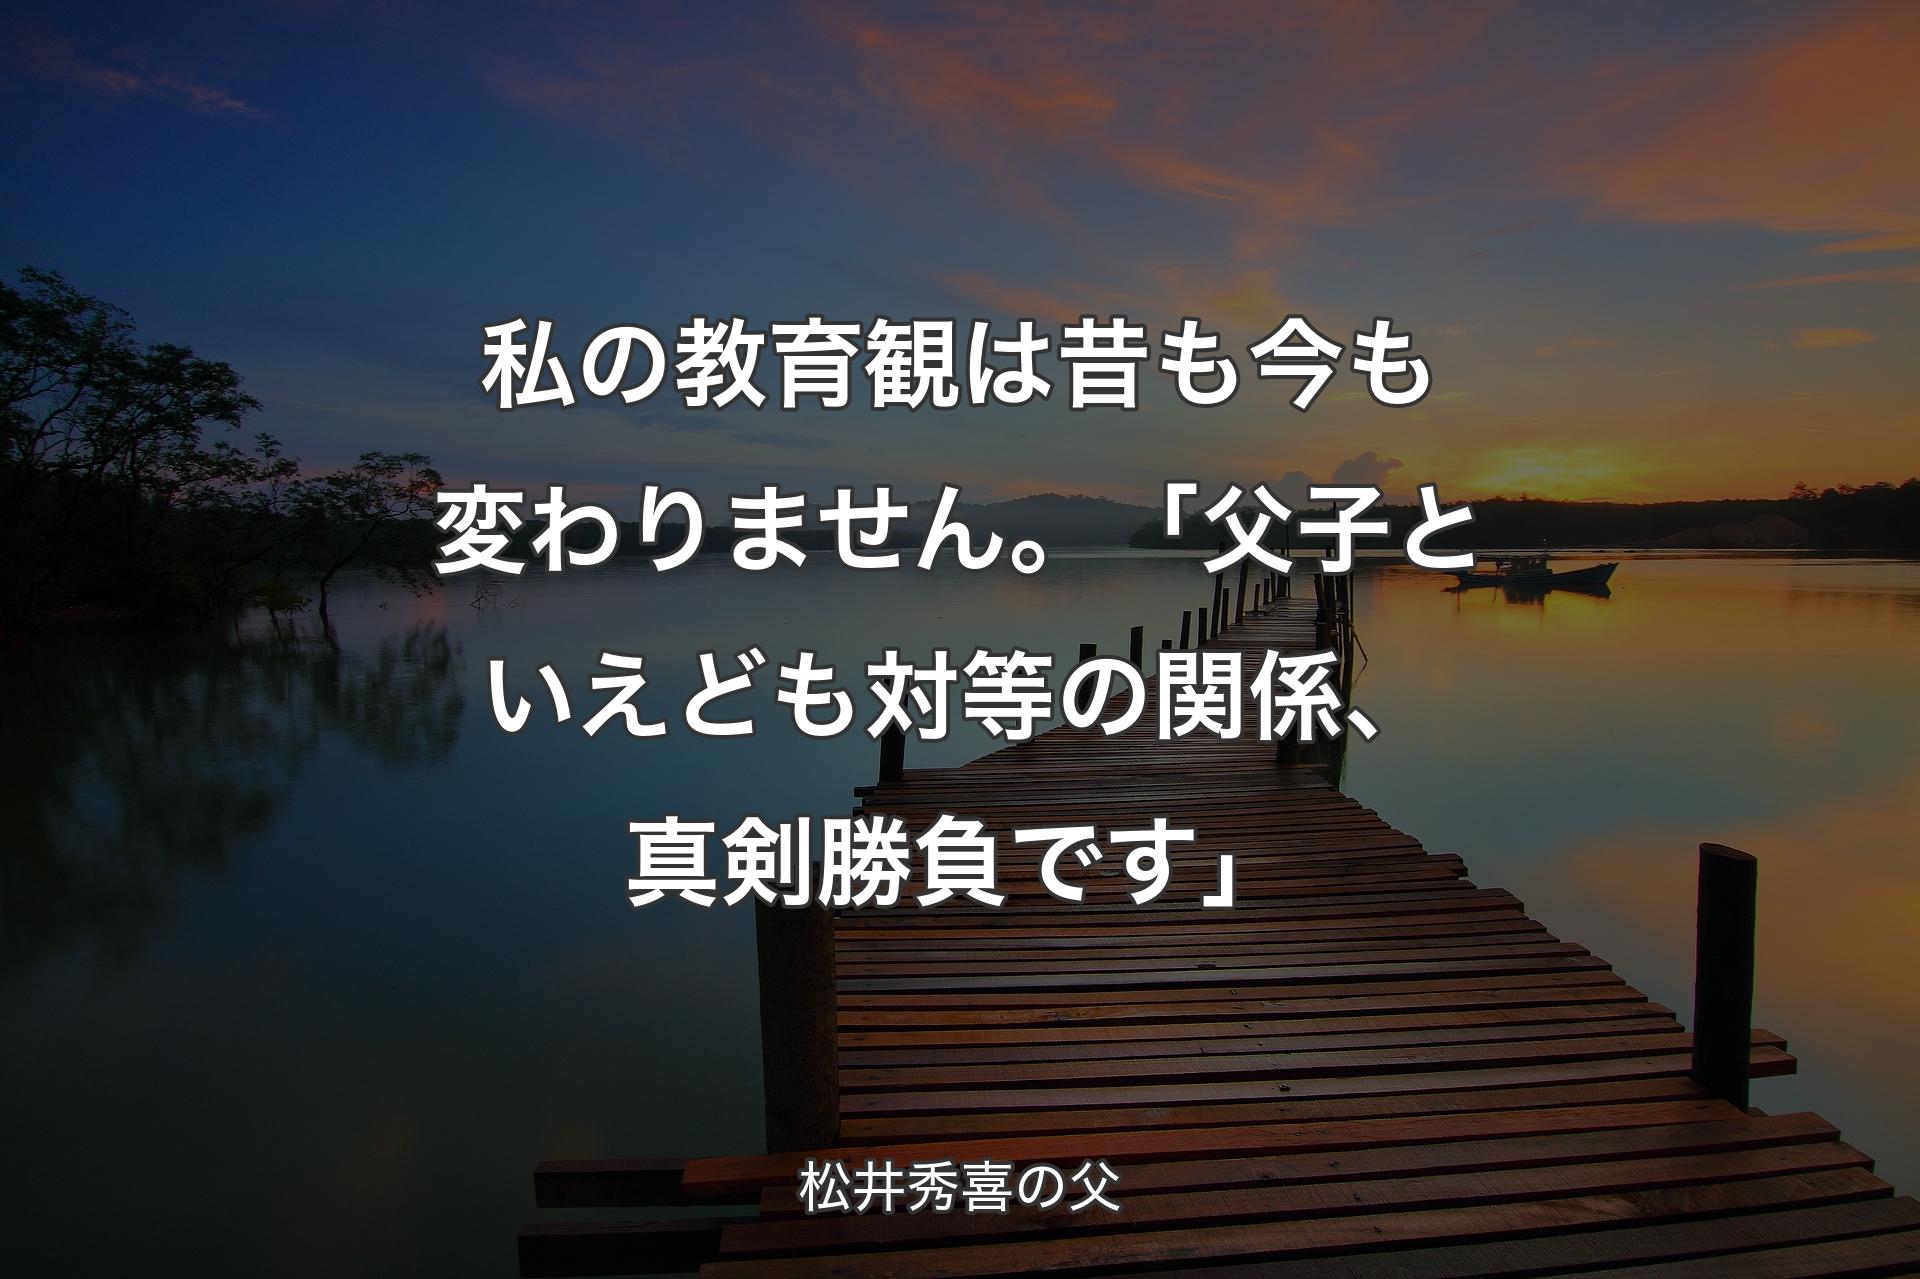 【背景3】私の教育観は昔も今も変わりません。「父子といえども対等��の関係、真剣勝負です」 - 松井秀喜の父